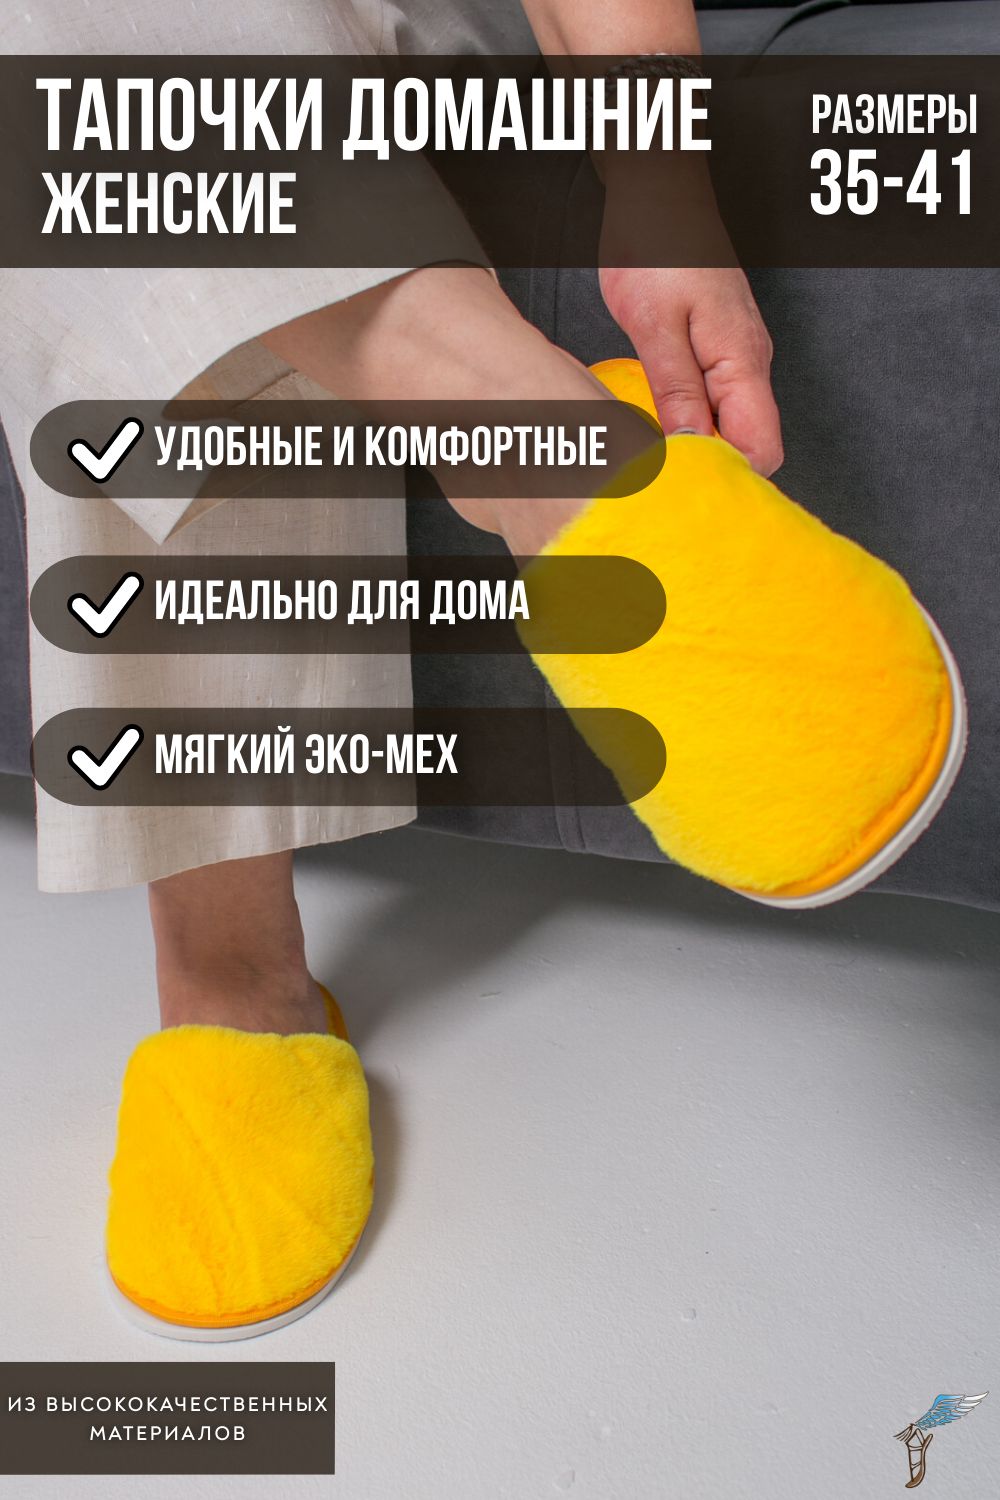 Тапочки домашние женские С-6ЖКТ-МР - желтый